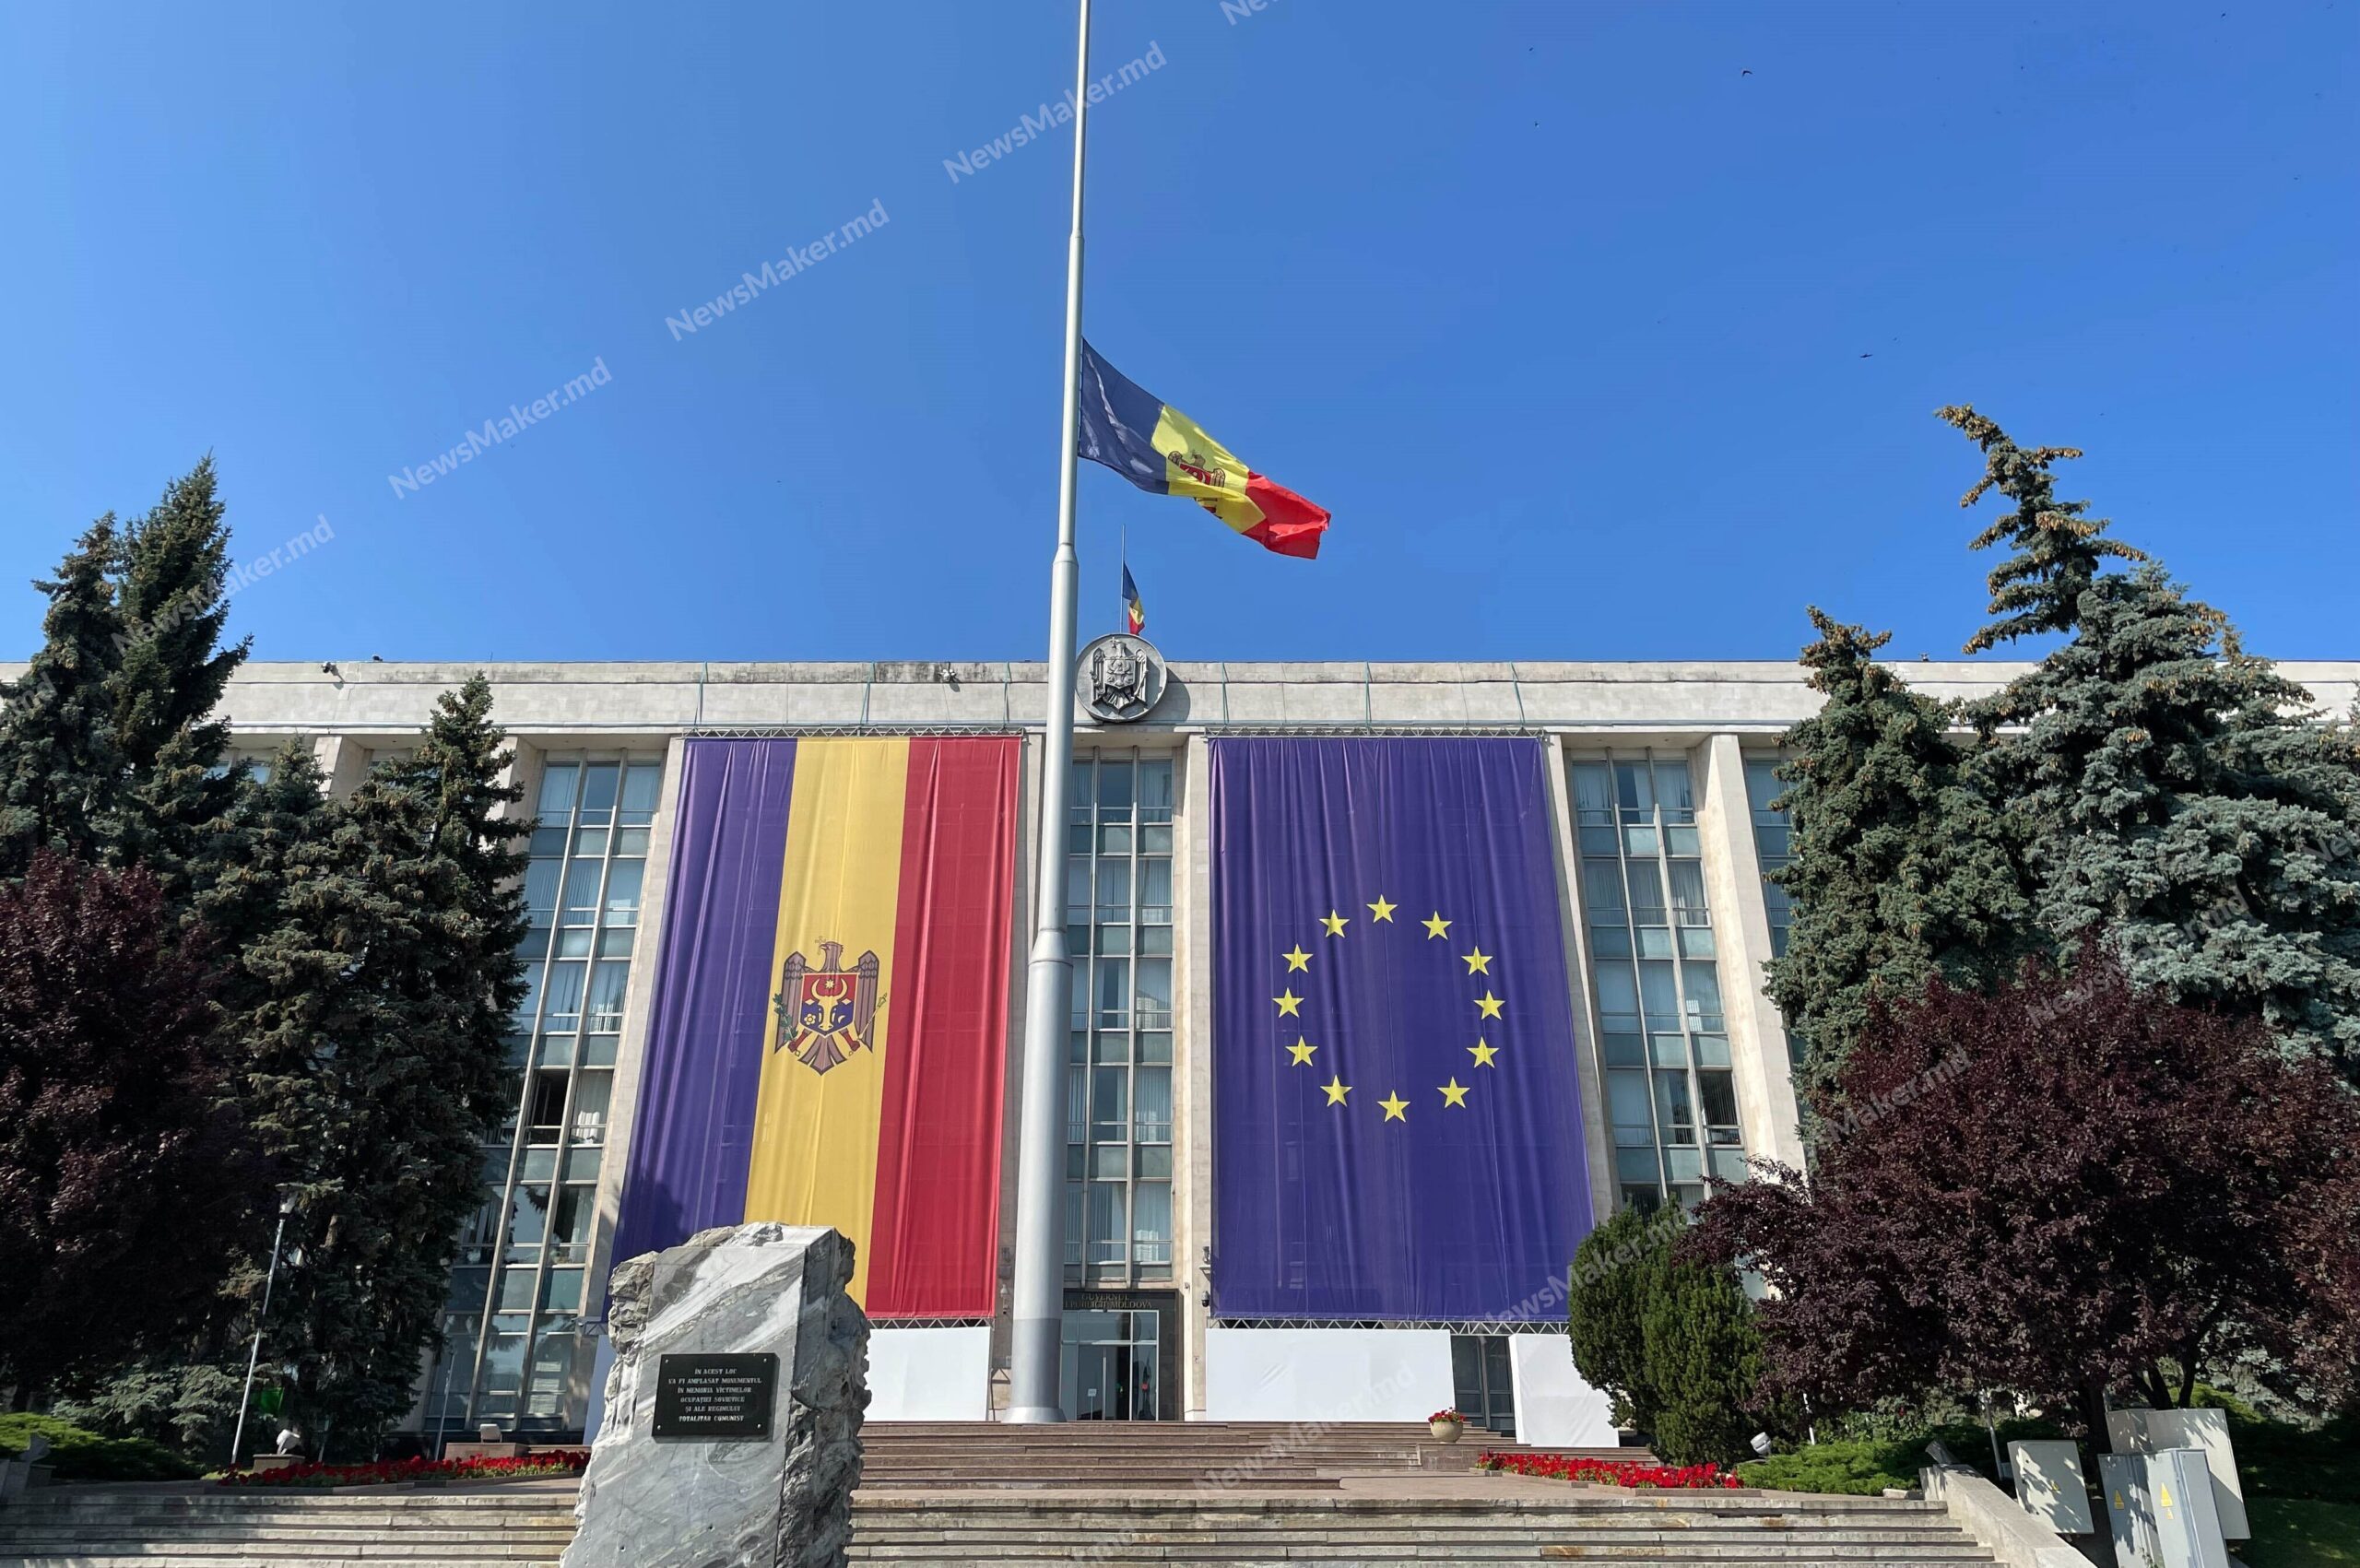 FOTO Moldova, în doliu. Mesaje de adio pentru cele două victime împușcate la Aeroport